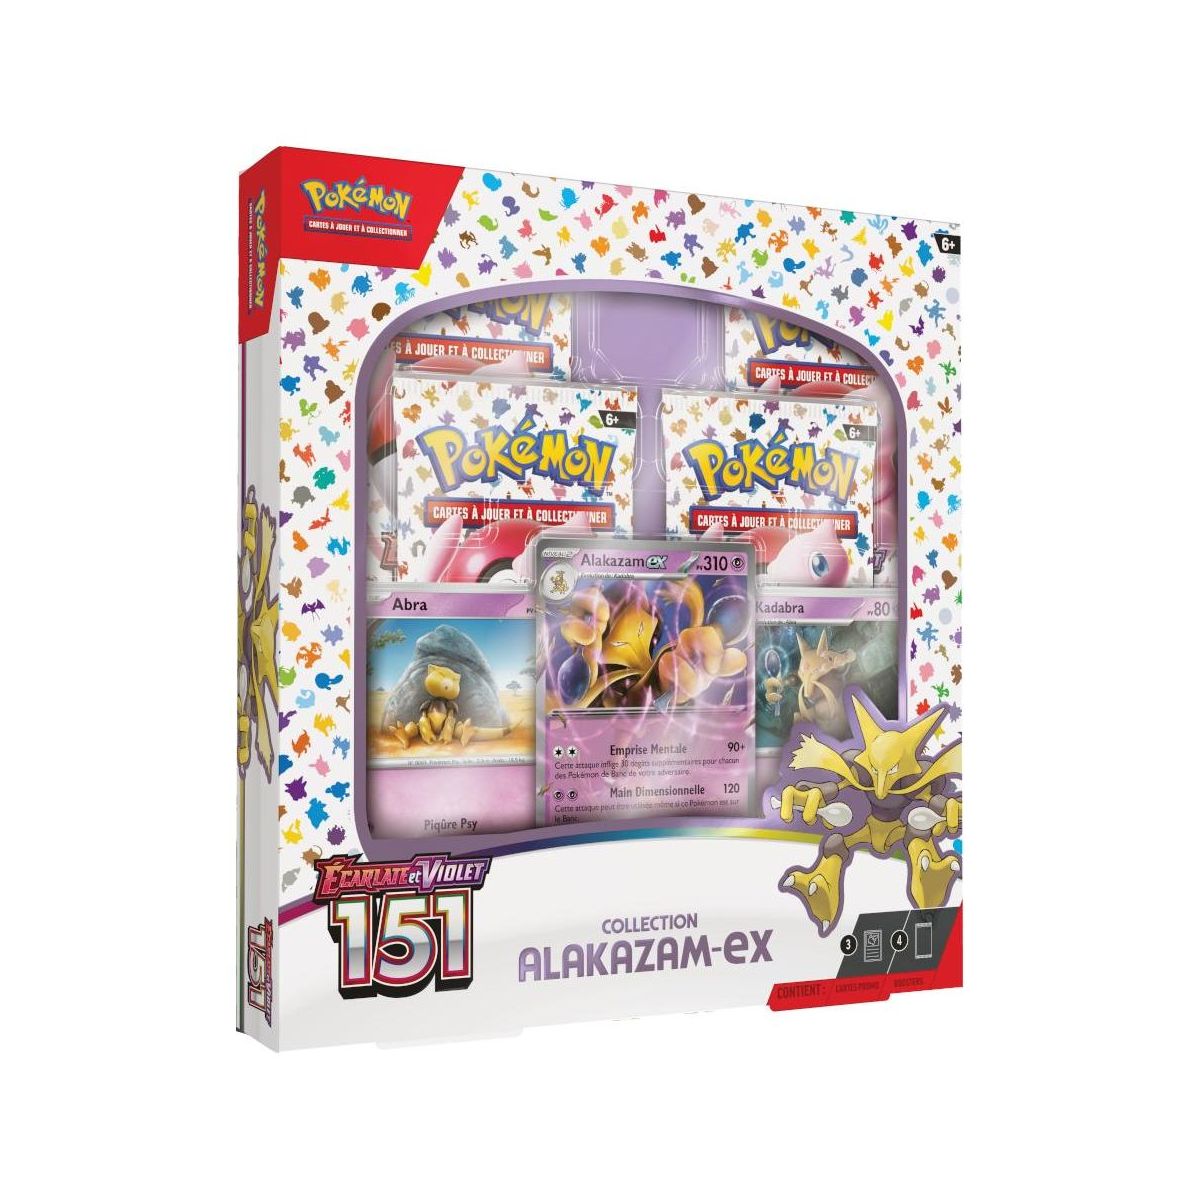 Pokémon - Alakazam EX Collection Box - Scarlet and Purple - 151 -[SV03.5 - EV03.5] - FR